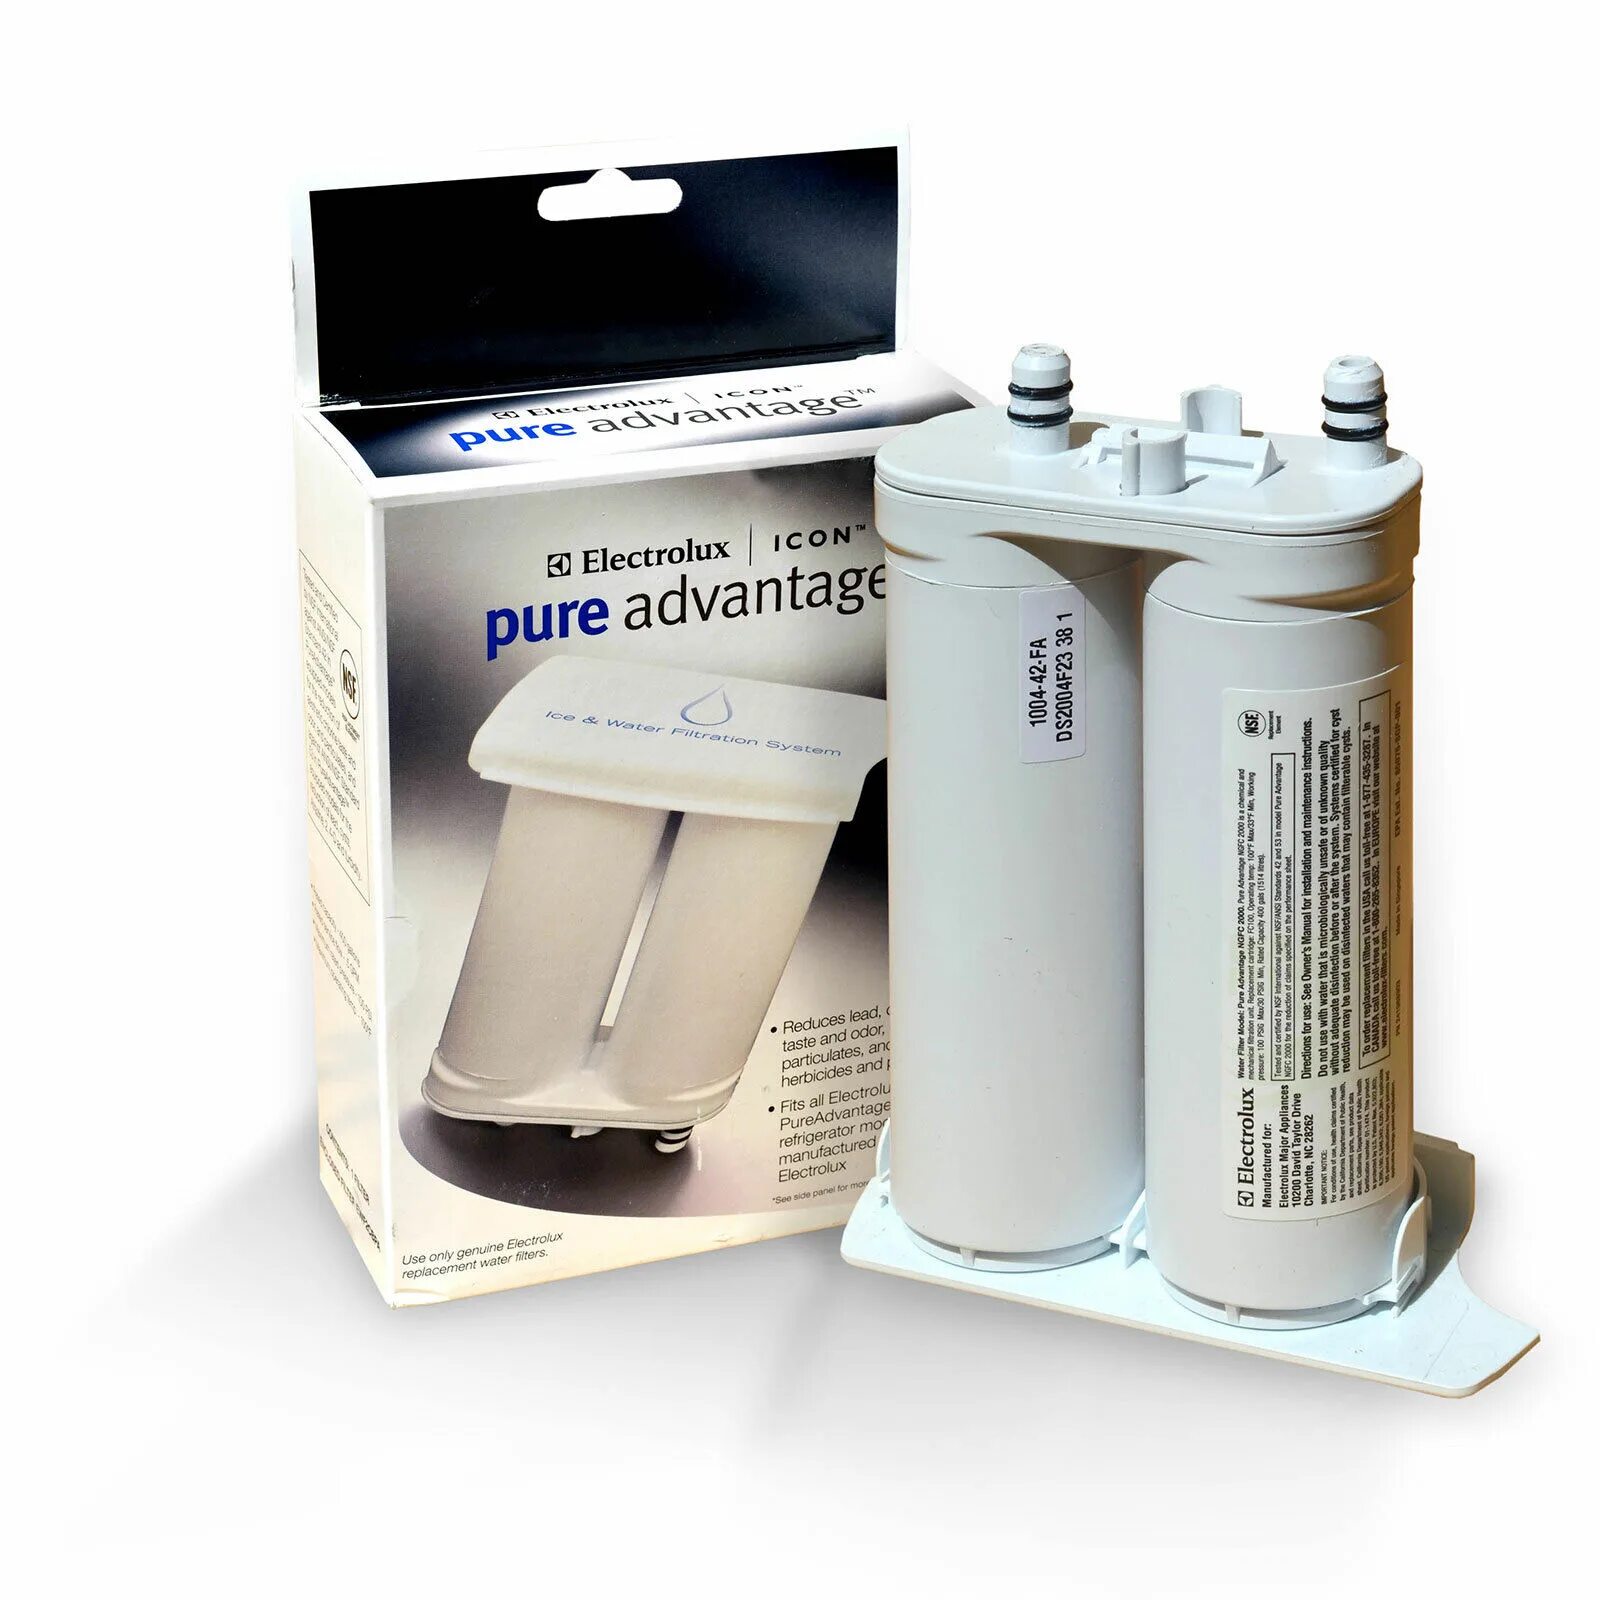 Фильтр для холодильника AEG, Electrolux 9029792349. Фильтры для воды Электролюкс Pure advantage. Фильтр для холодильника Electrolux. Фильтр для холодильника AEG. Electrolux фильтр для воды